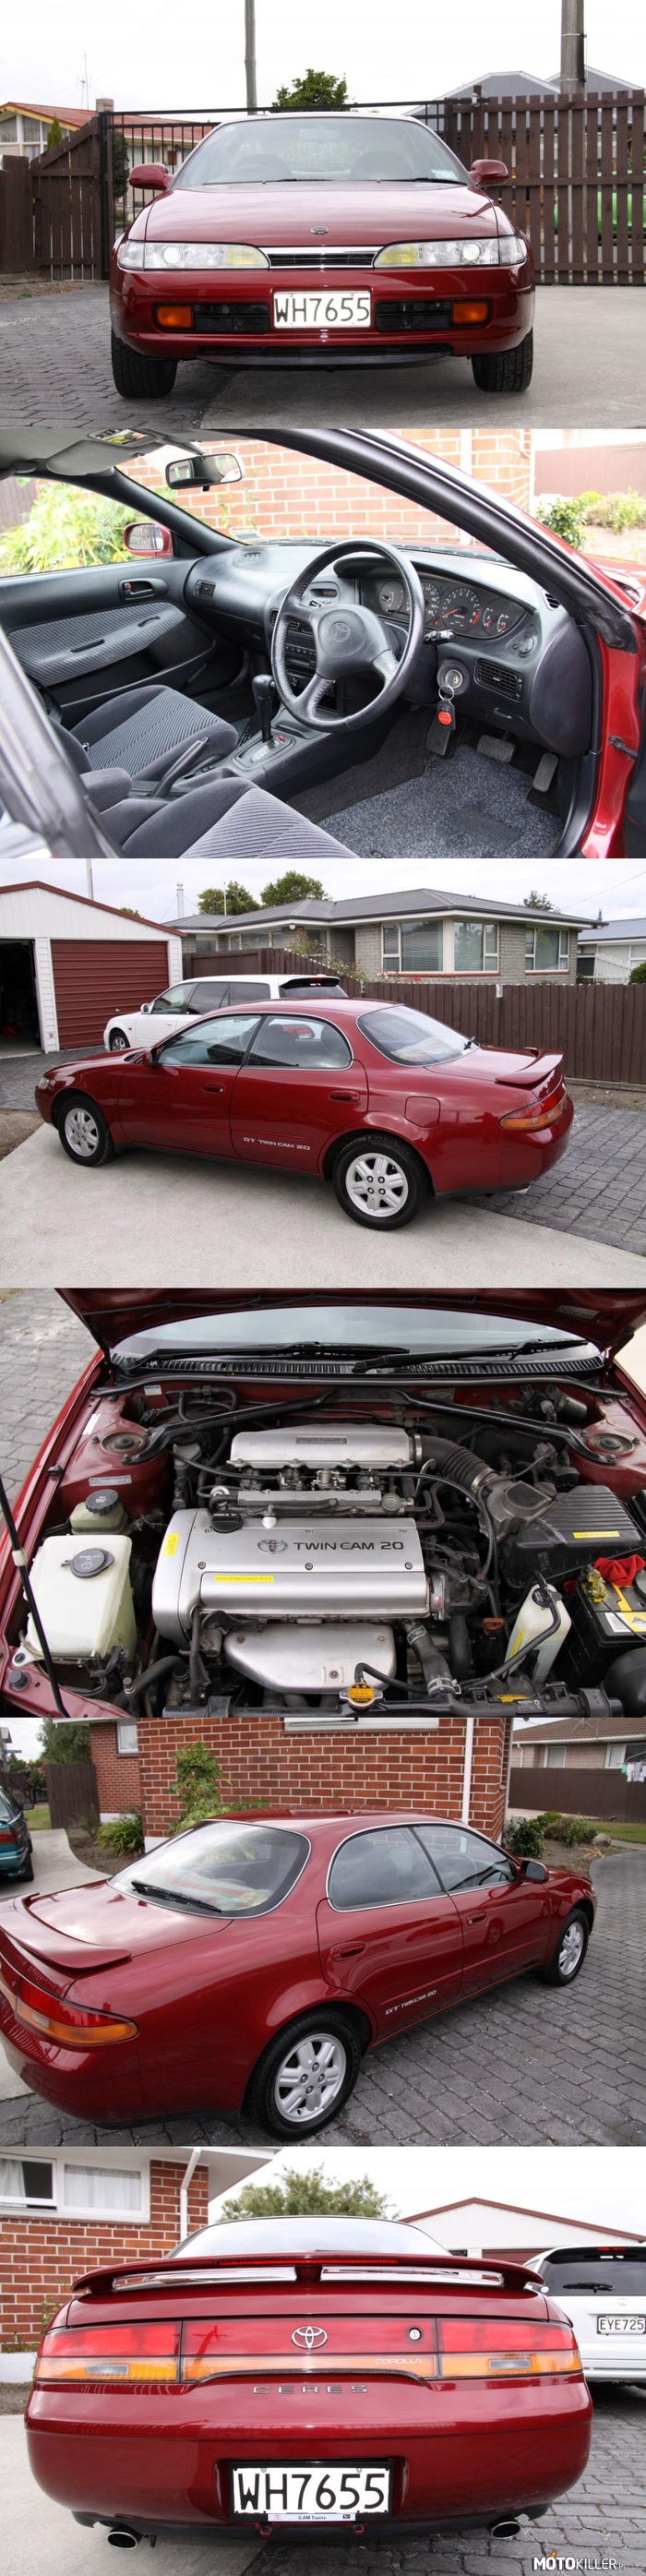 Toyota Corolla Ceres 1992 – Bardzo rzadka wersja Corolli siódmej generacji produkowana w latach 1992-1998 tylko z kierownicą po prawej stronie. Pod maską kultowe 4A-GE silvertop o mocy 160 KM. Ciekawostką są ukryte środkowe słupki za szybami bocznymi. 